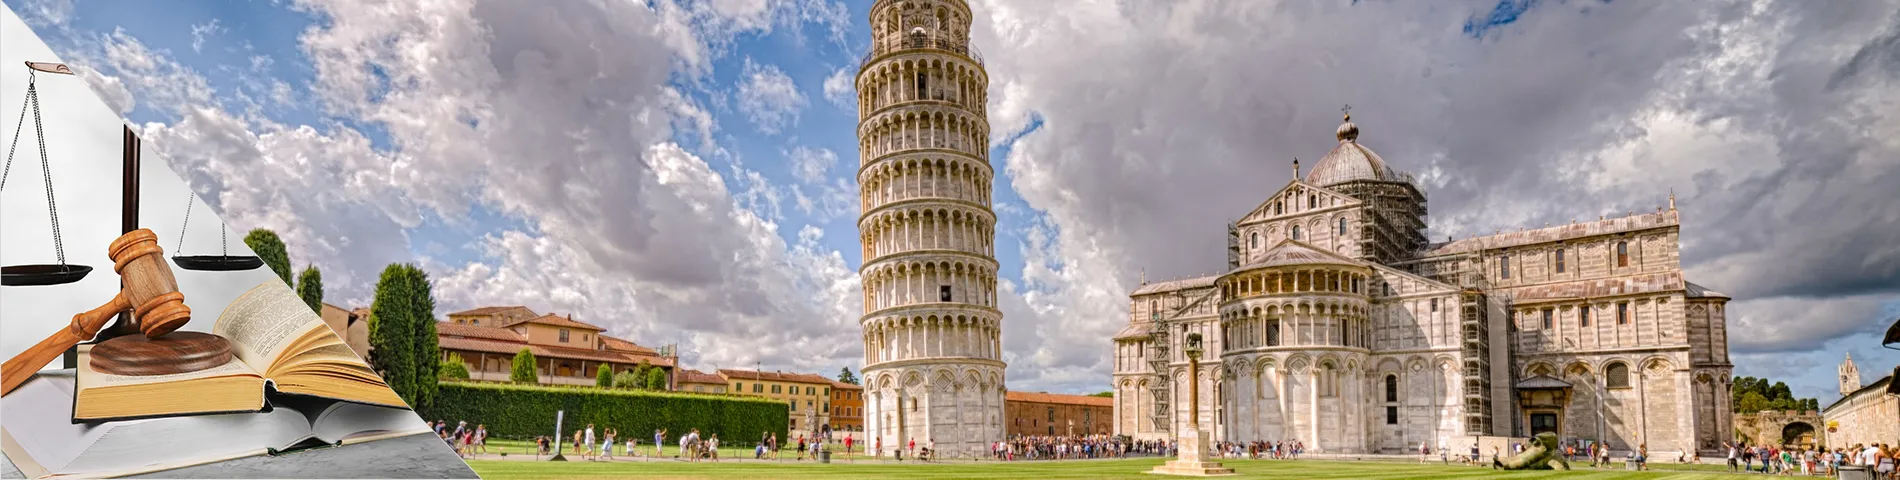 Pisa - Italienska och lag